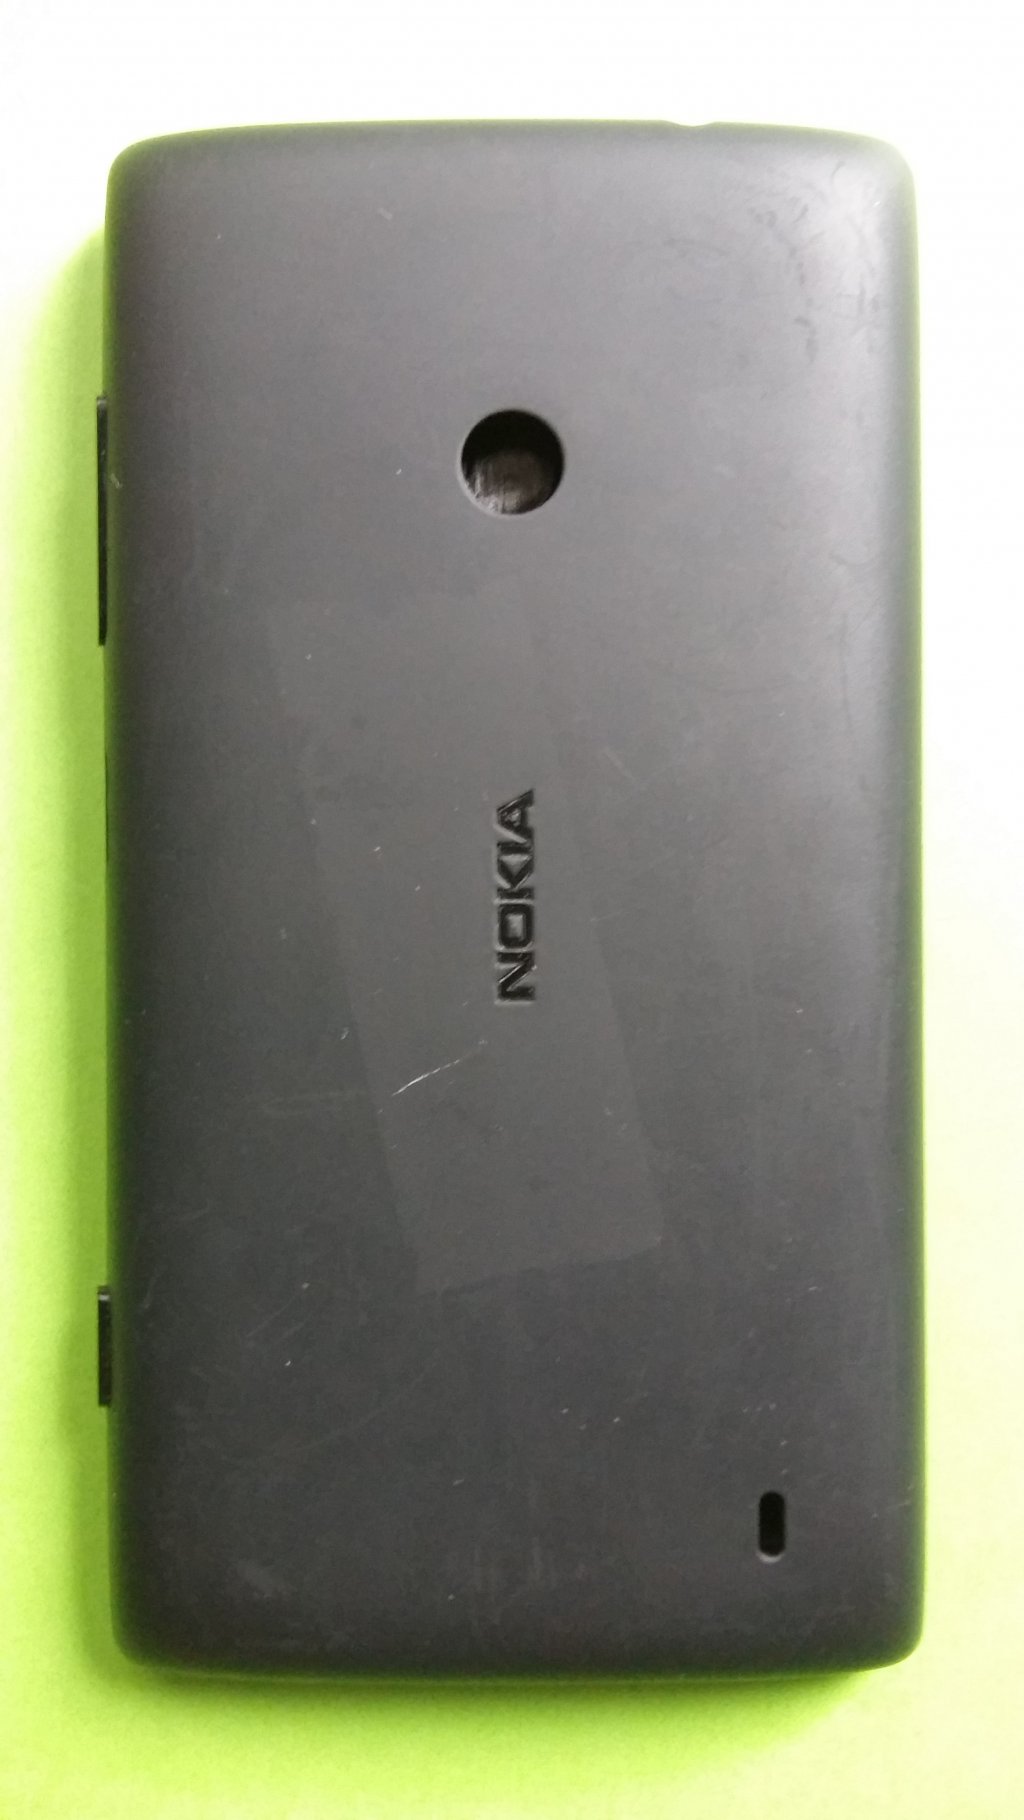 image-7798626-Nokia_520_Lumia_(3)2.w640.jpg